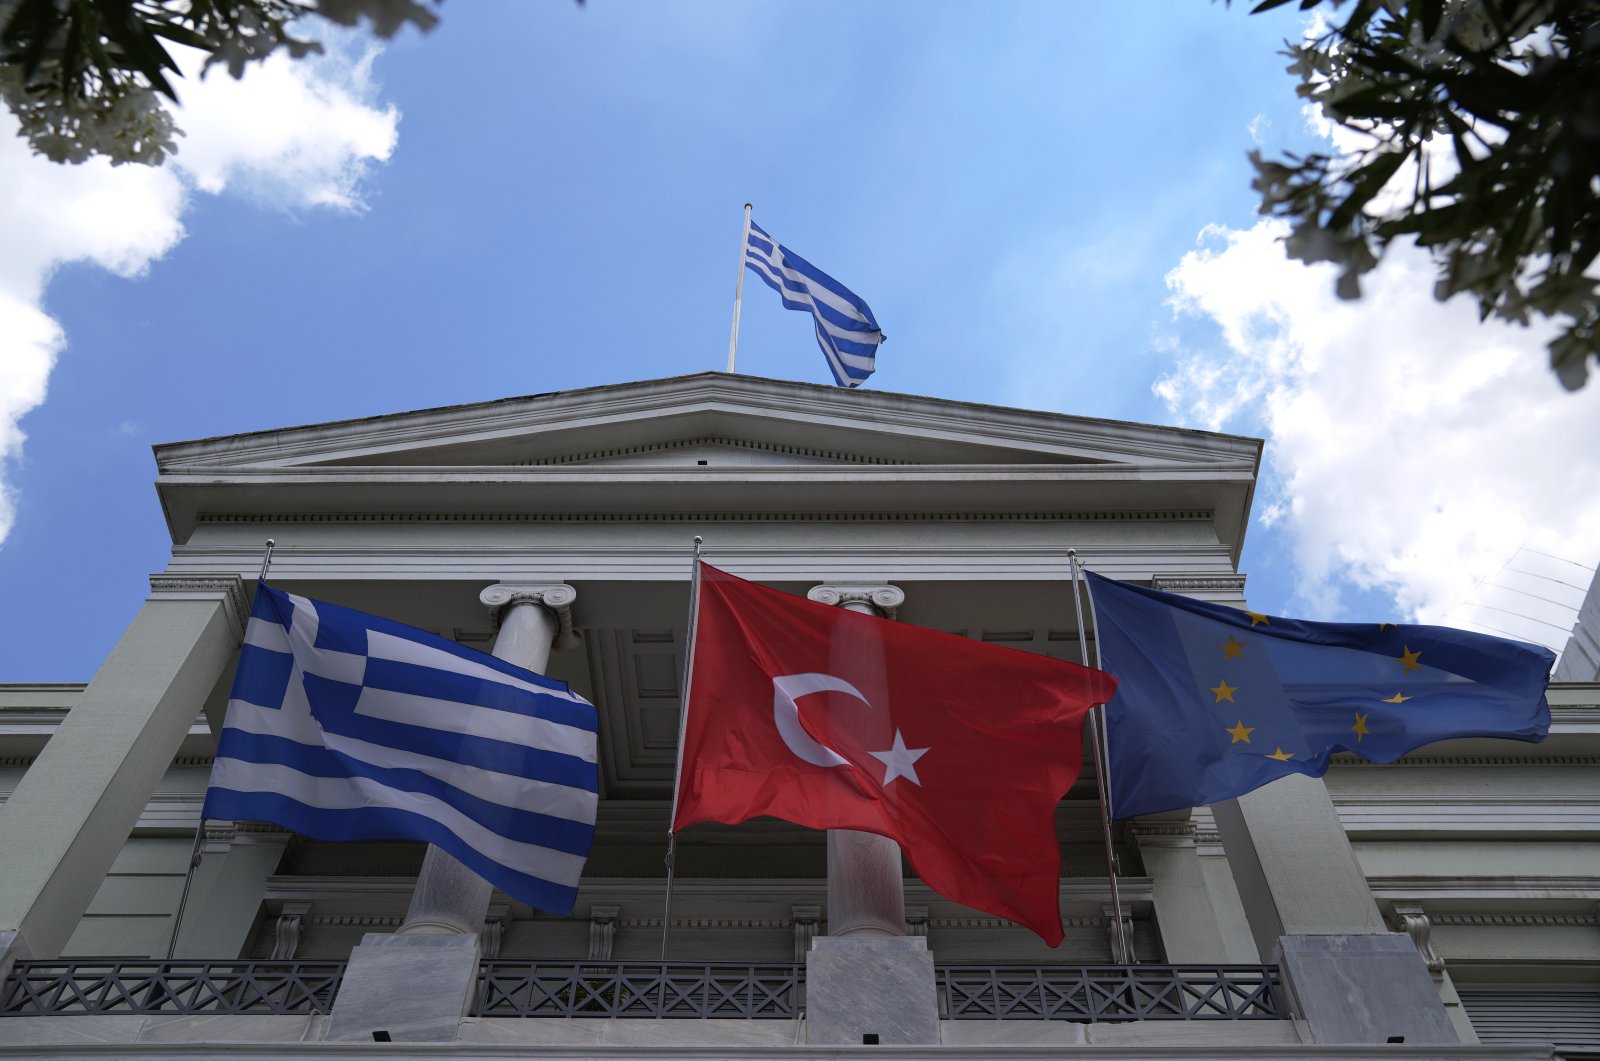 Yunani harus mencari hubungan yang lebih baik dengan Turki: ahli Yunani